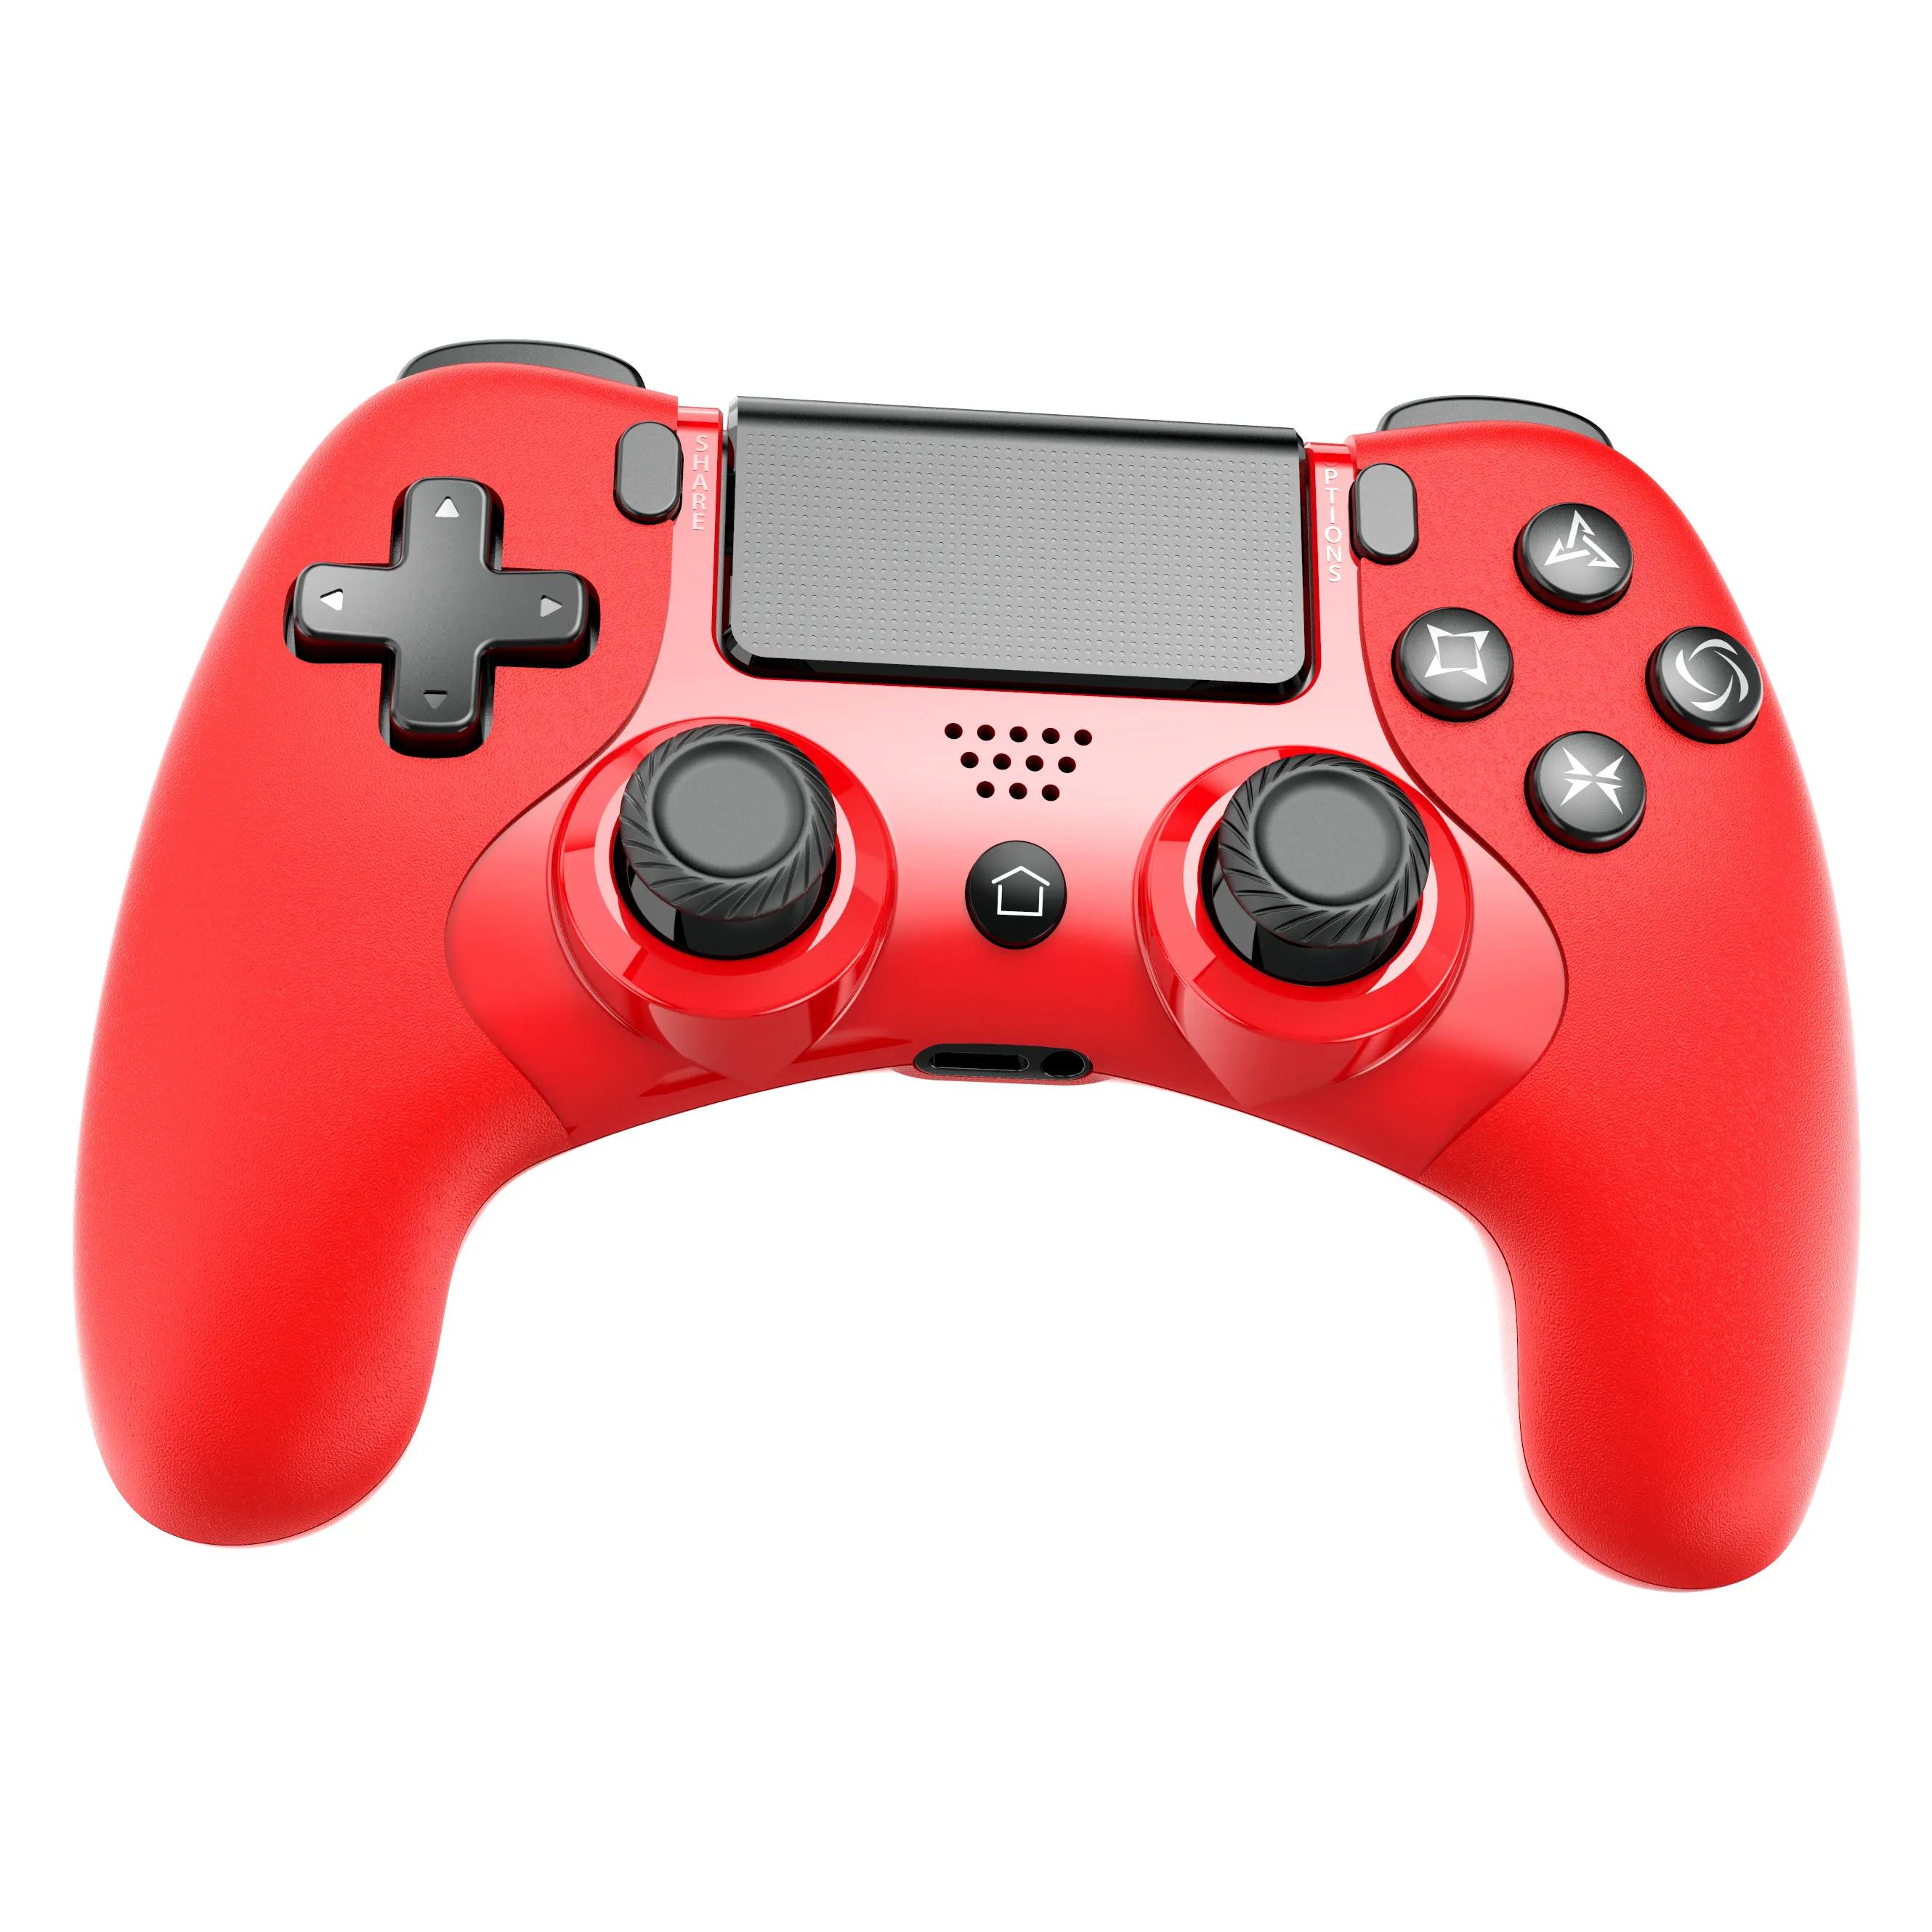 वायरलेस खेल पैड के लिए रंगीन शैली नियंत्रक के साथ PS4